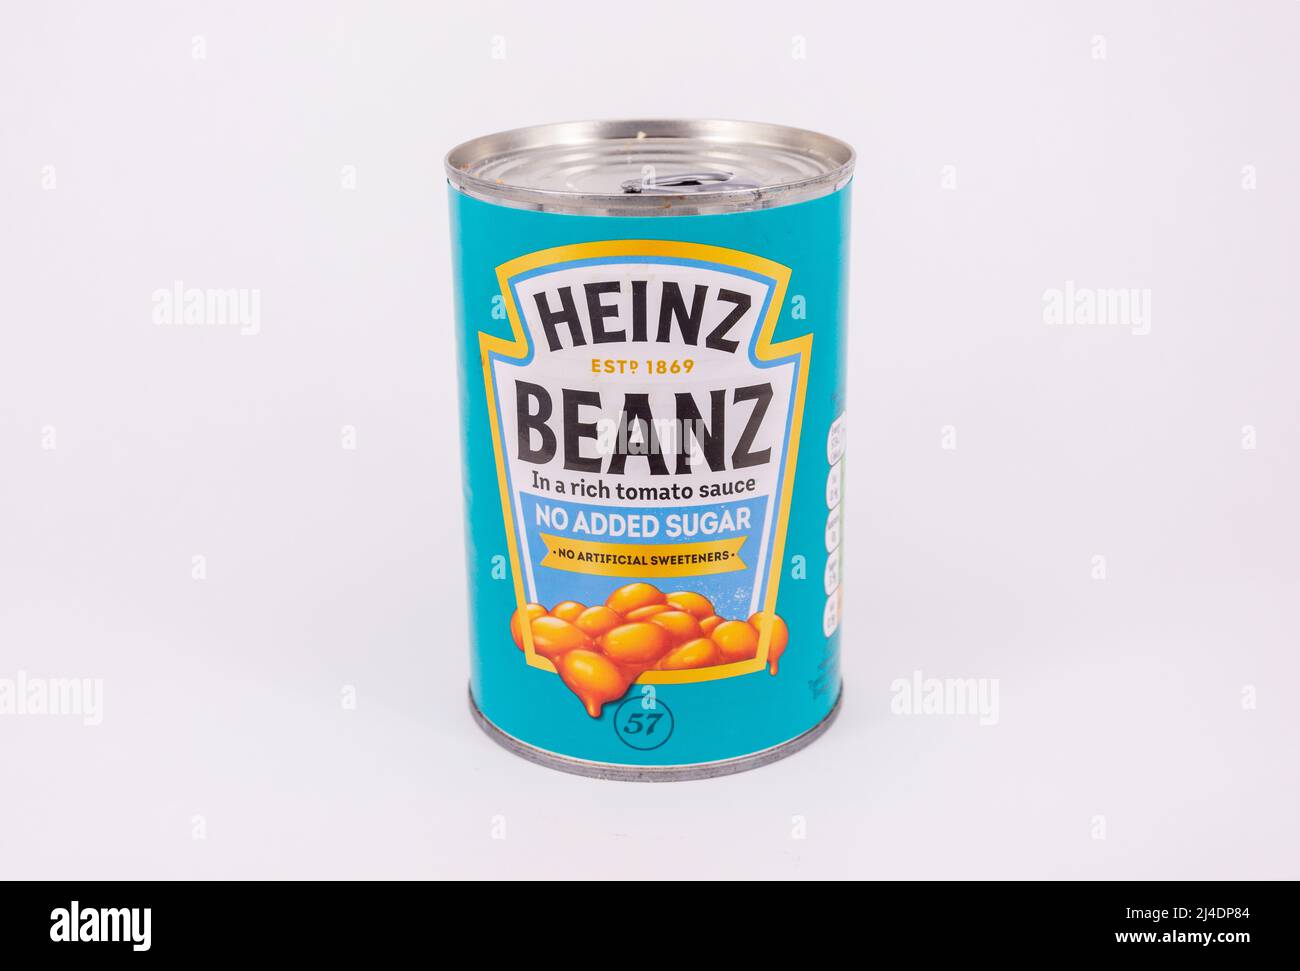 Gros plan de l'étain de Heinz Beanz (sans sucre ajouté), Surrey, Angleterre, Royaume-Uni Banque D'Images